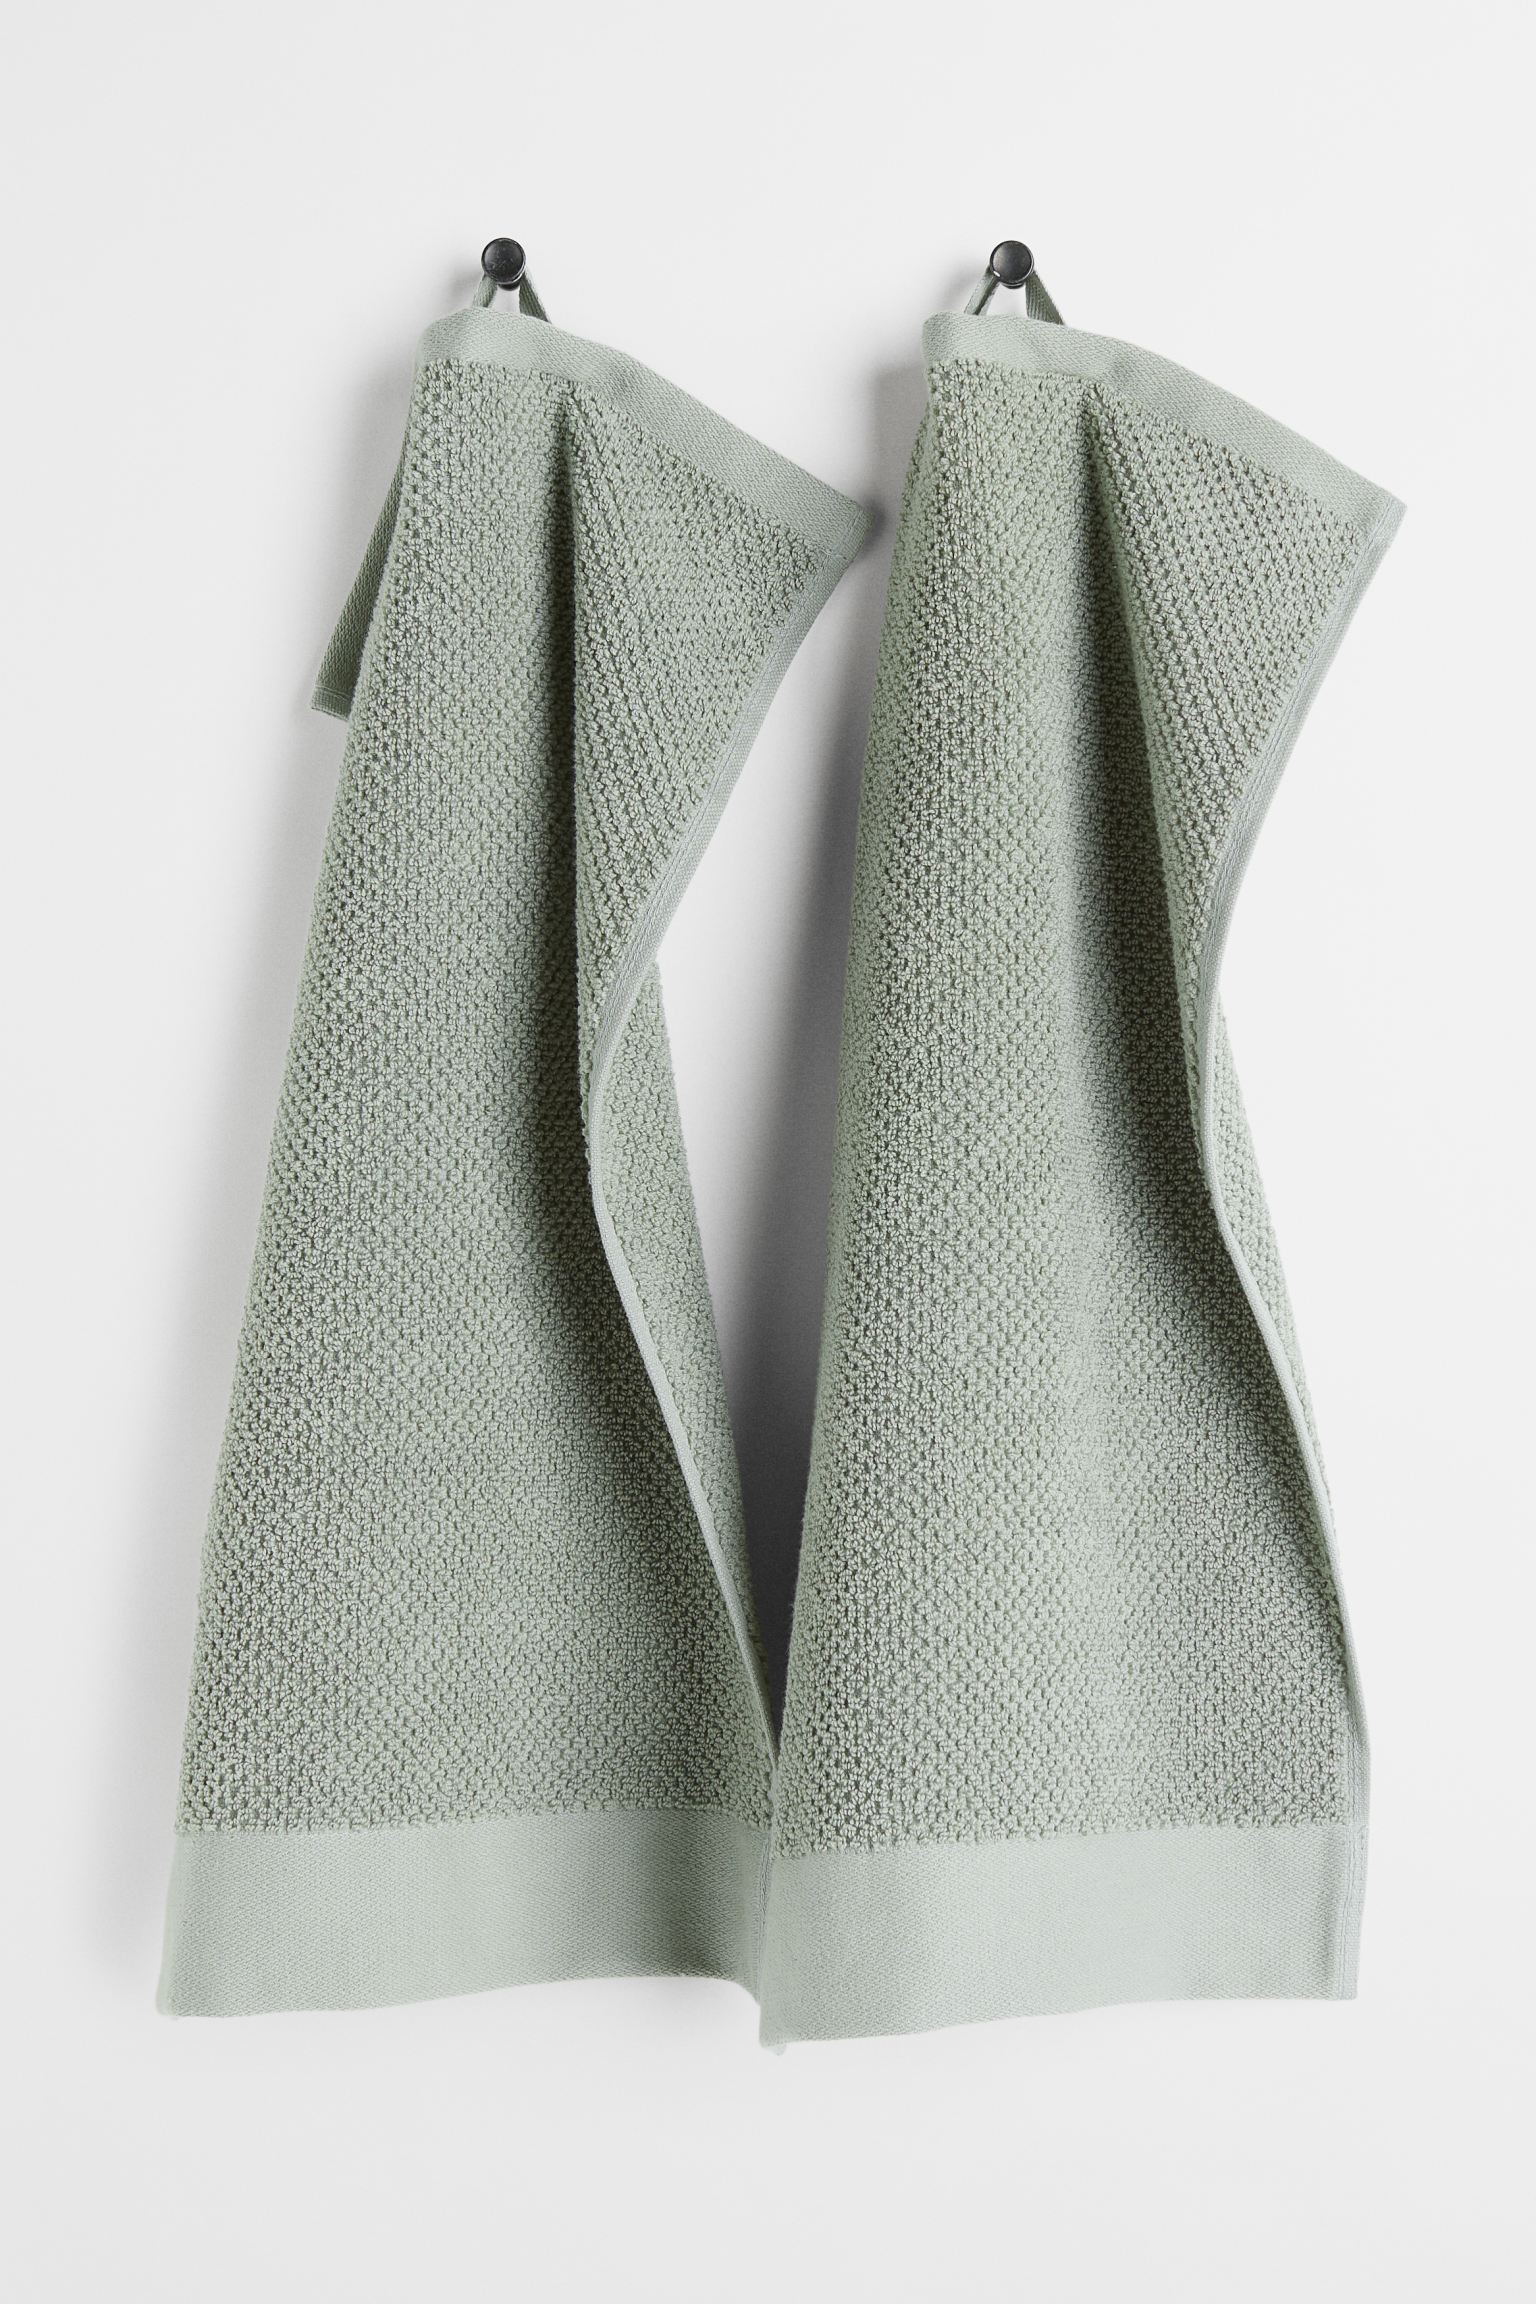 H&M Home Махровое гостевое полотенце, 2 шт., зеленый шалфей, 30x50 1097511004 | 1097511004